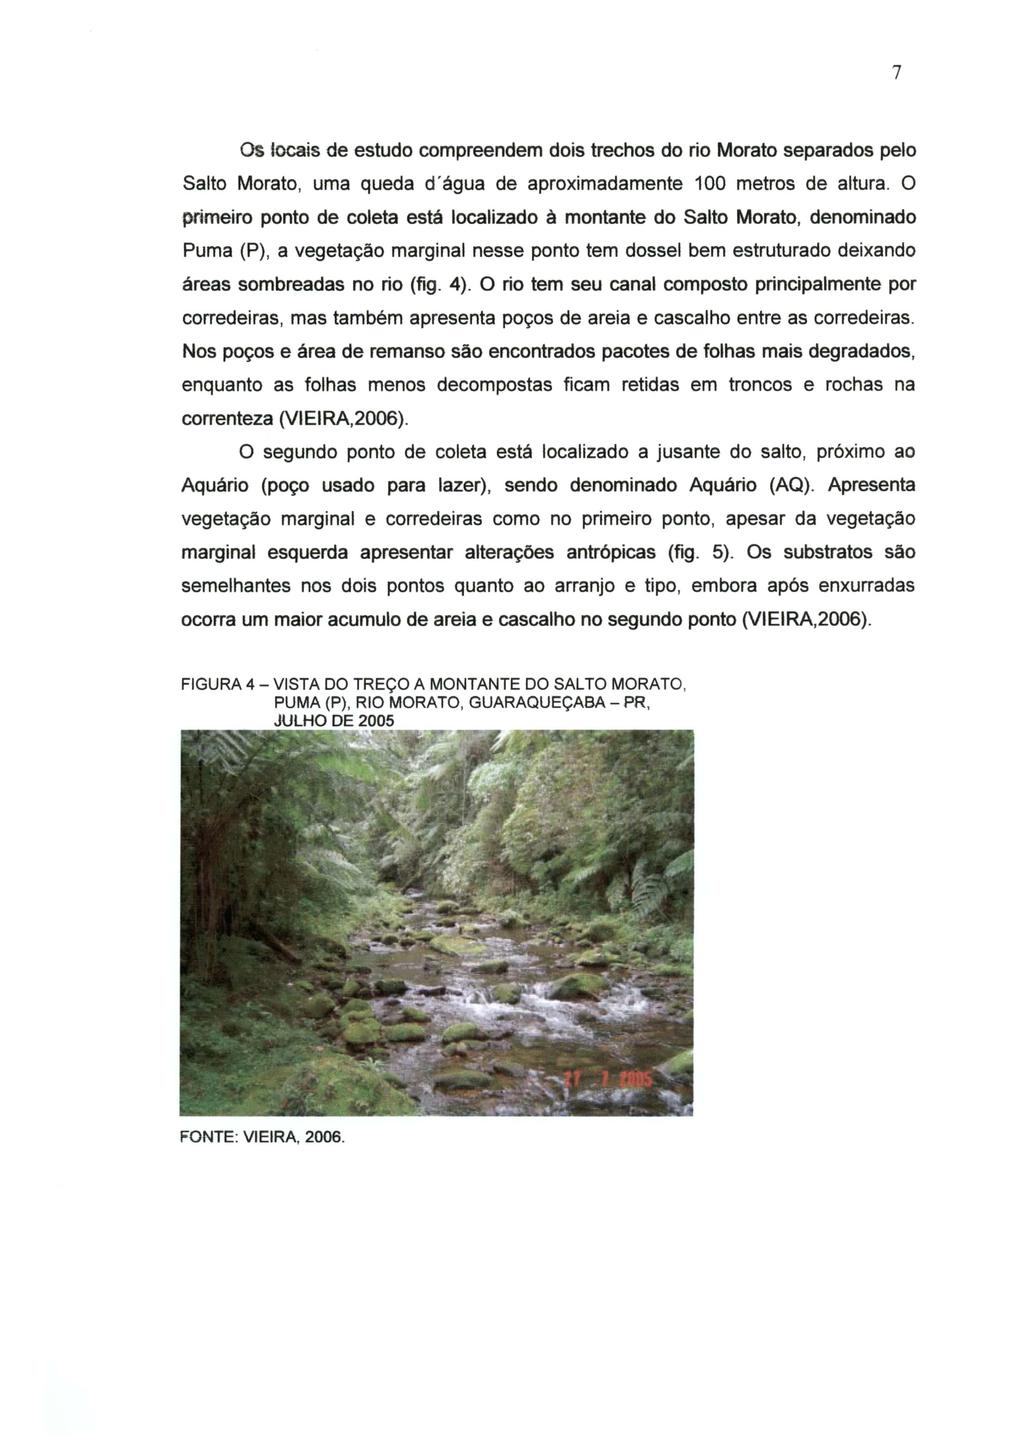 7 os tocais de estudo compreendem dois trechos do rio Morato separados pelo Salto Morato, uma queda d'água de aproximadamente 100 metros de altura.